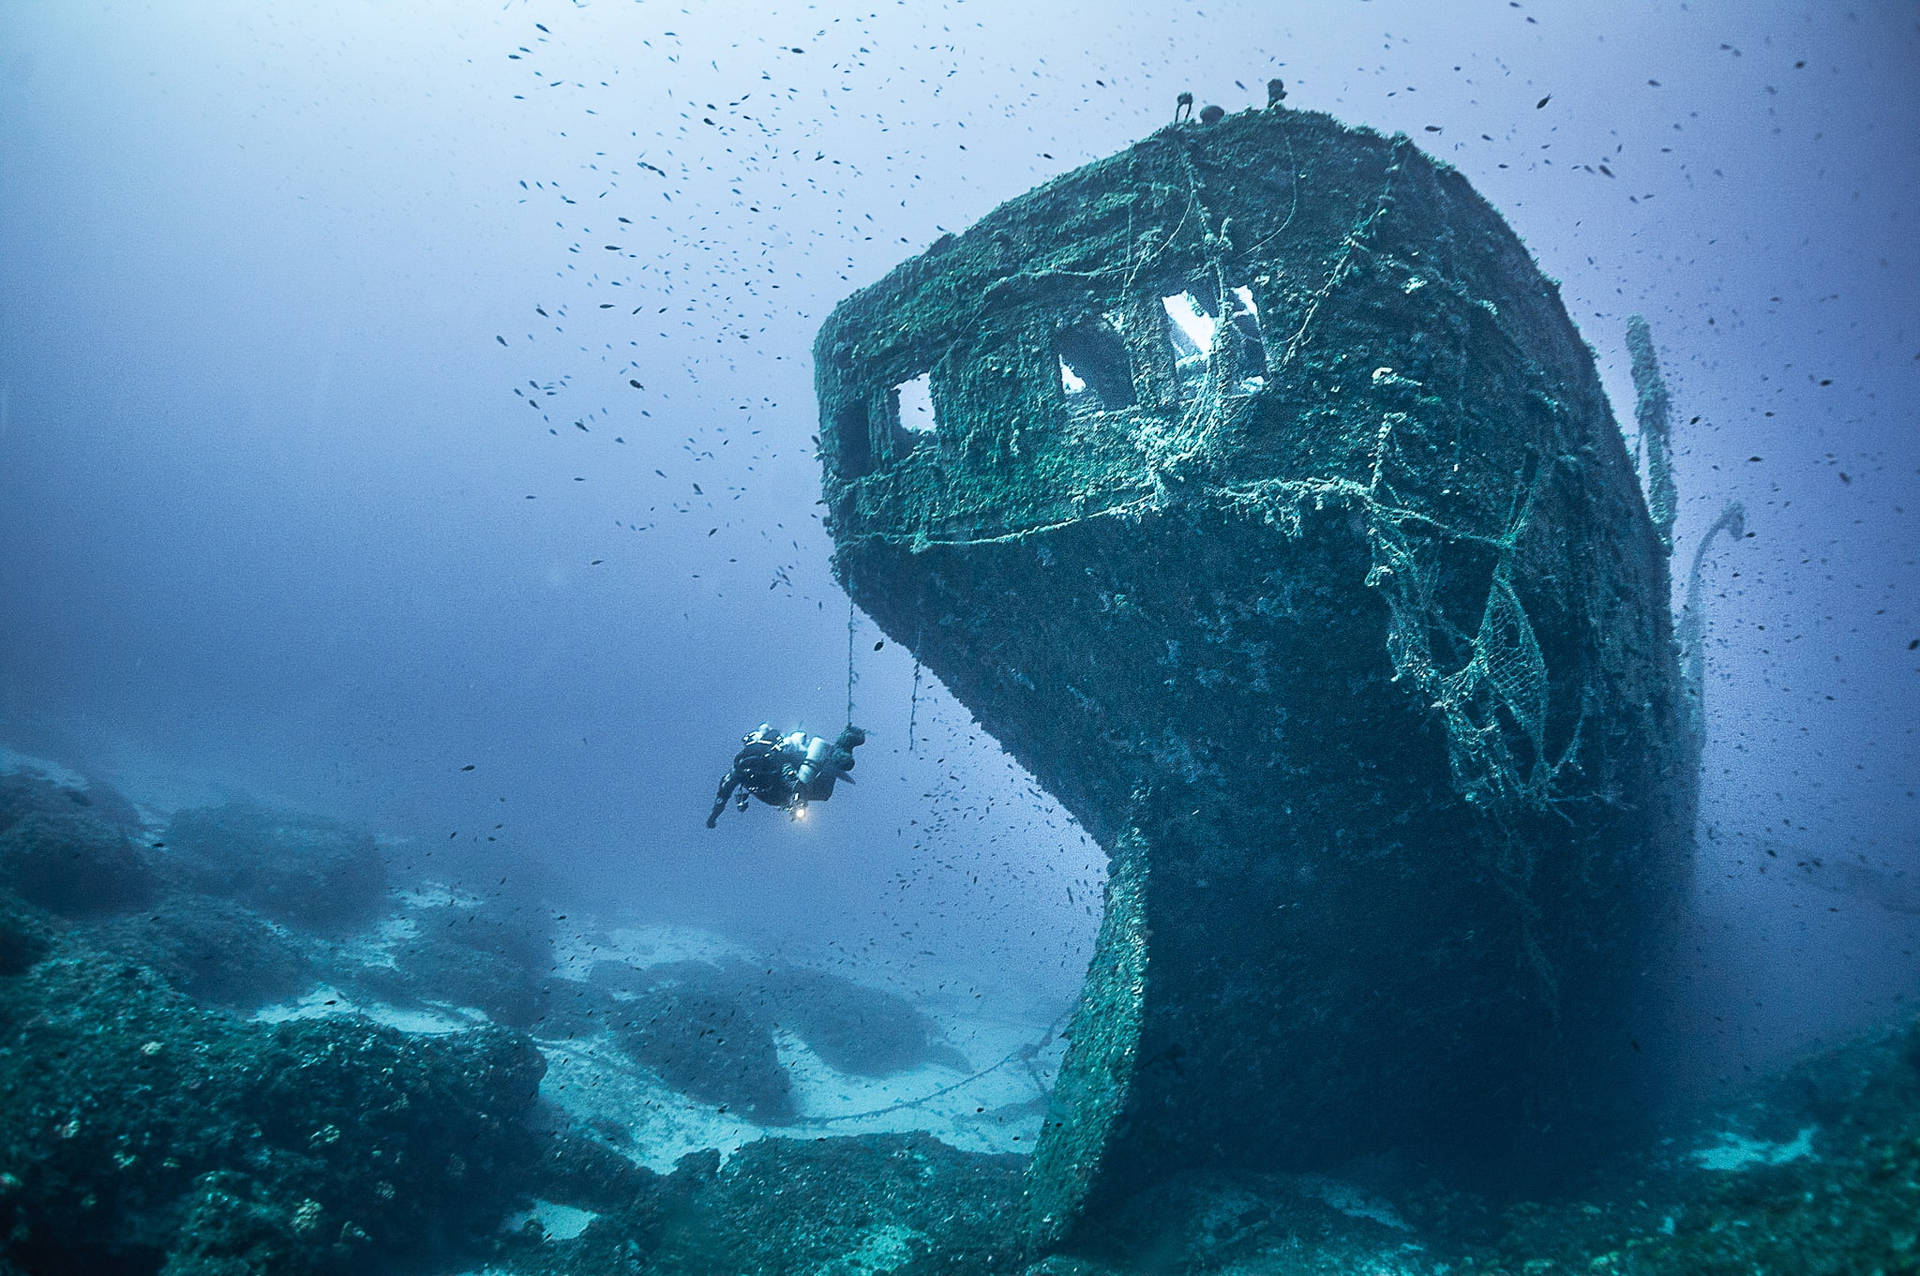 Scuba Diving Old Shipwreck Wallpaper